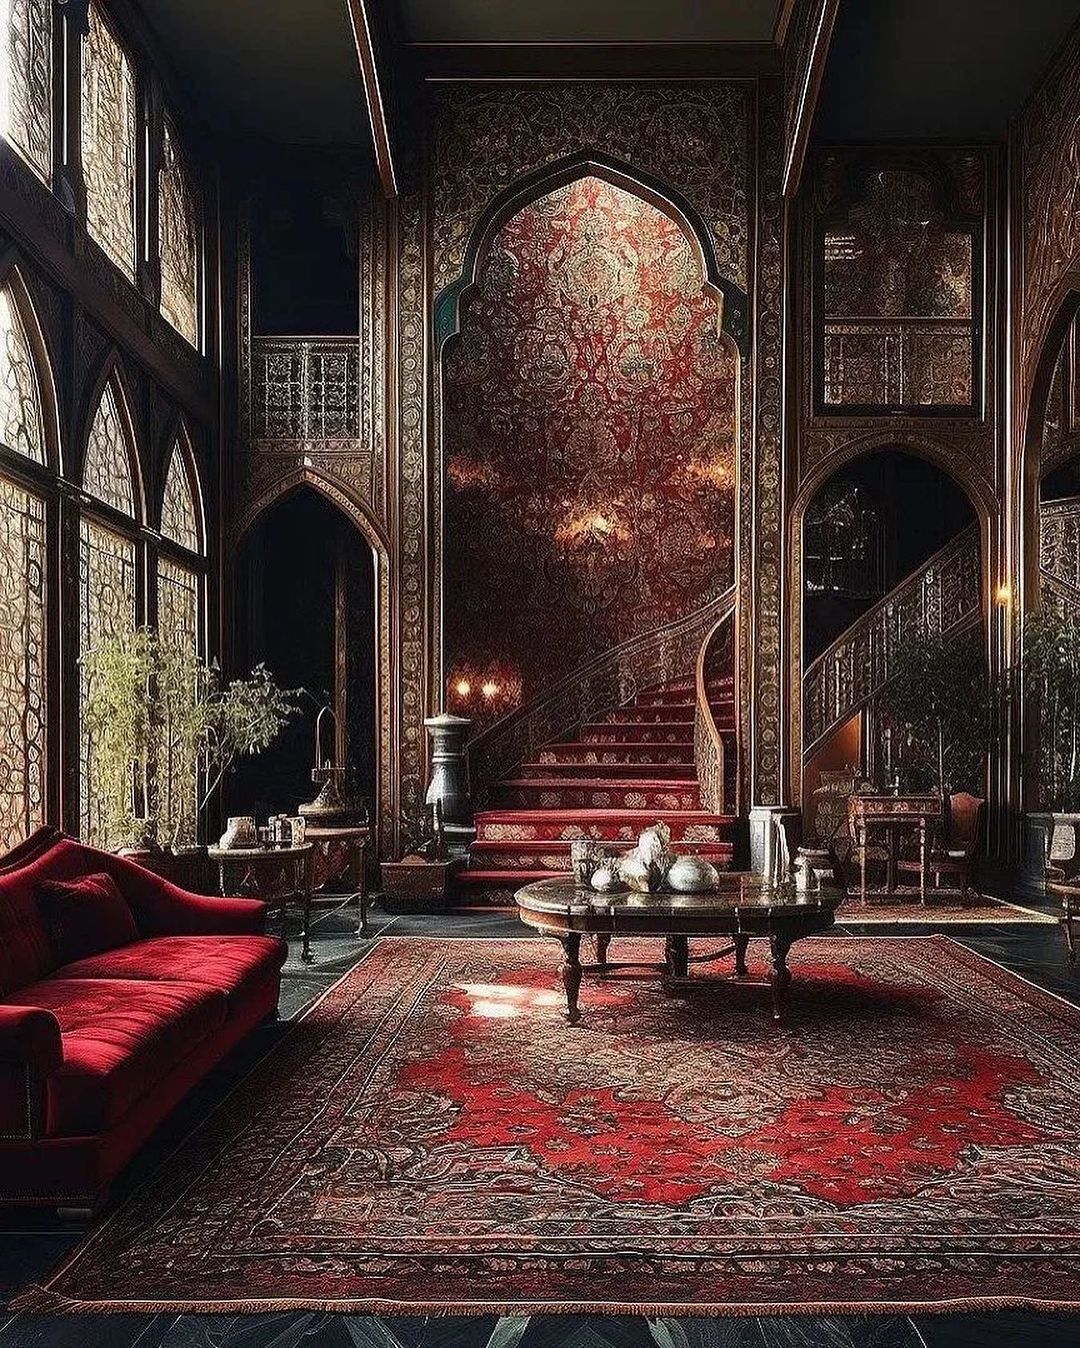 یکی از زیباترین خروجی های هوش مصنوعی به خاطر فرش ایرانی (عکس)